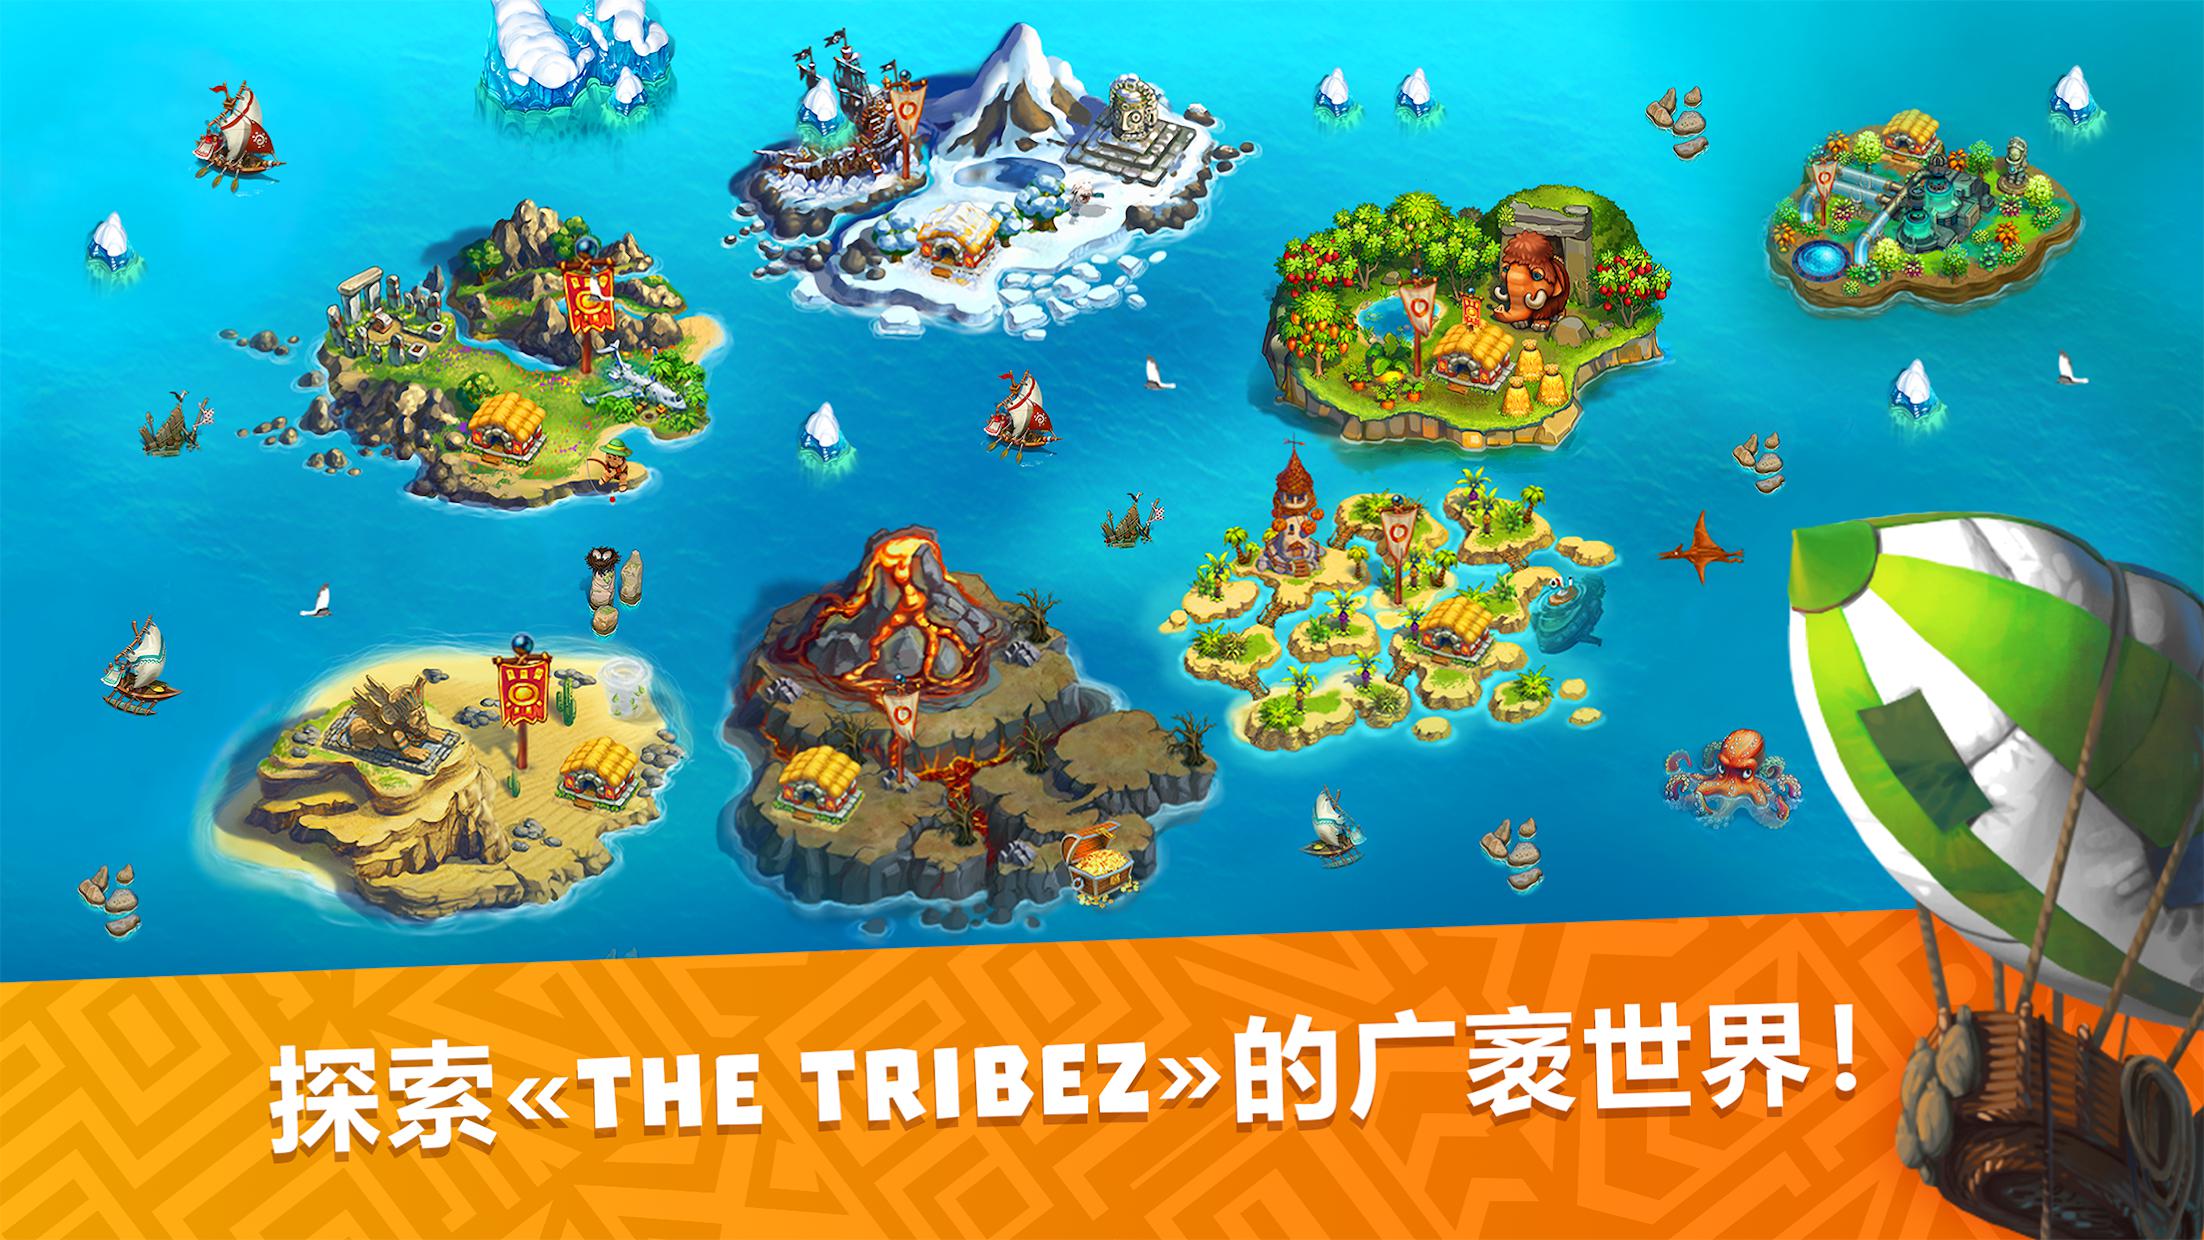 tribez build a village